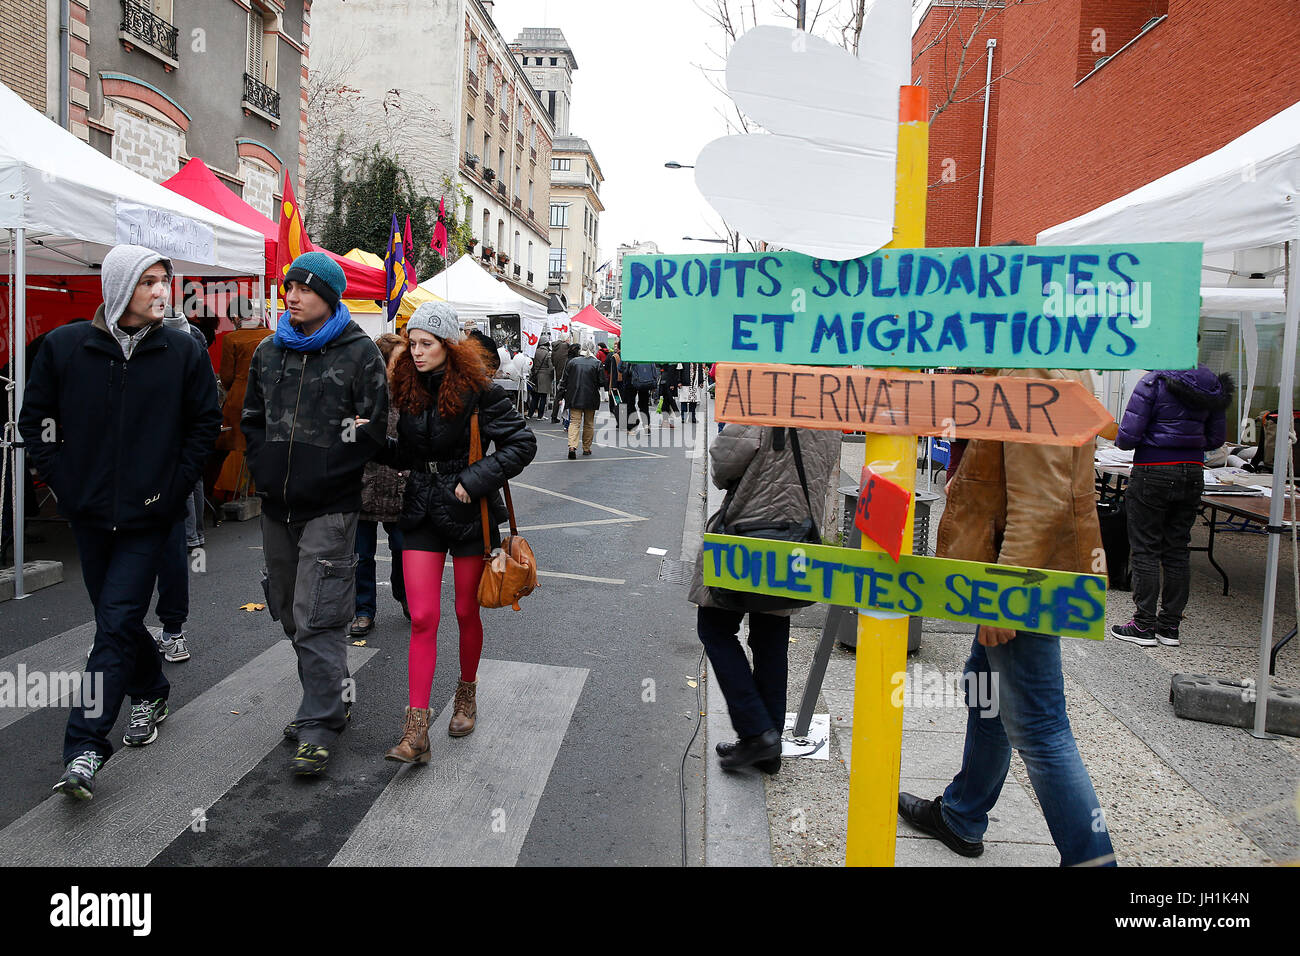 Peoples' Climate Summit - Sommet citoyen pour le climat. France. Stock Photo